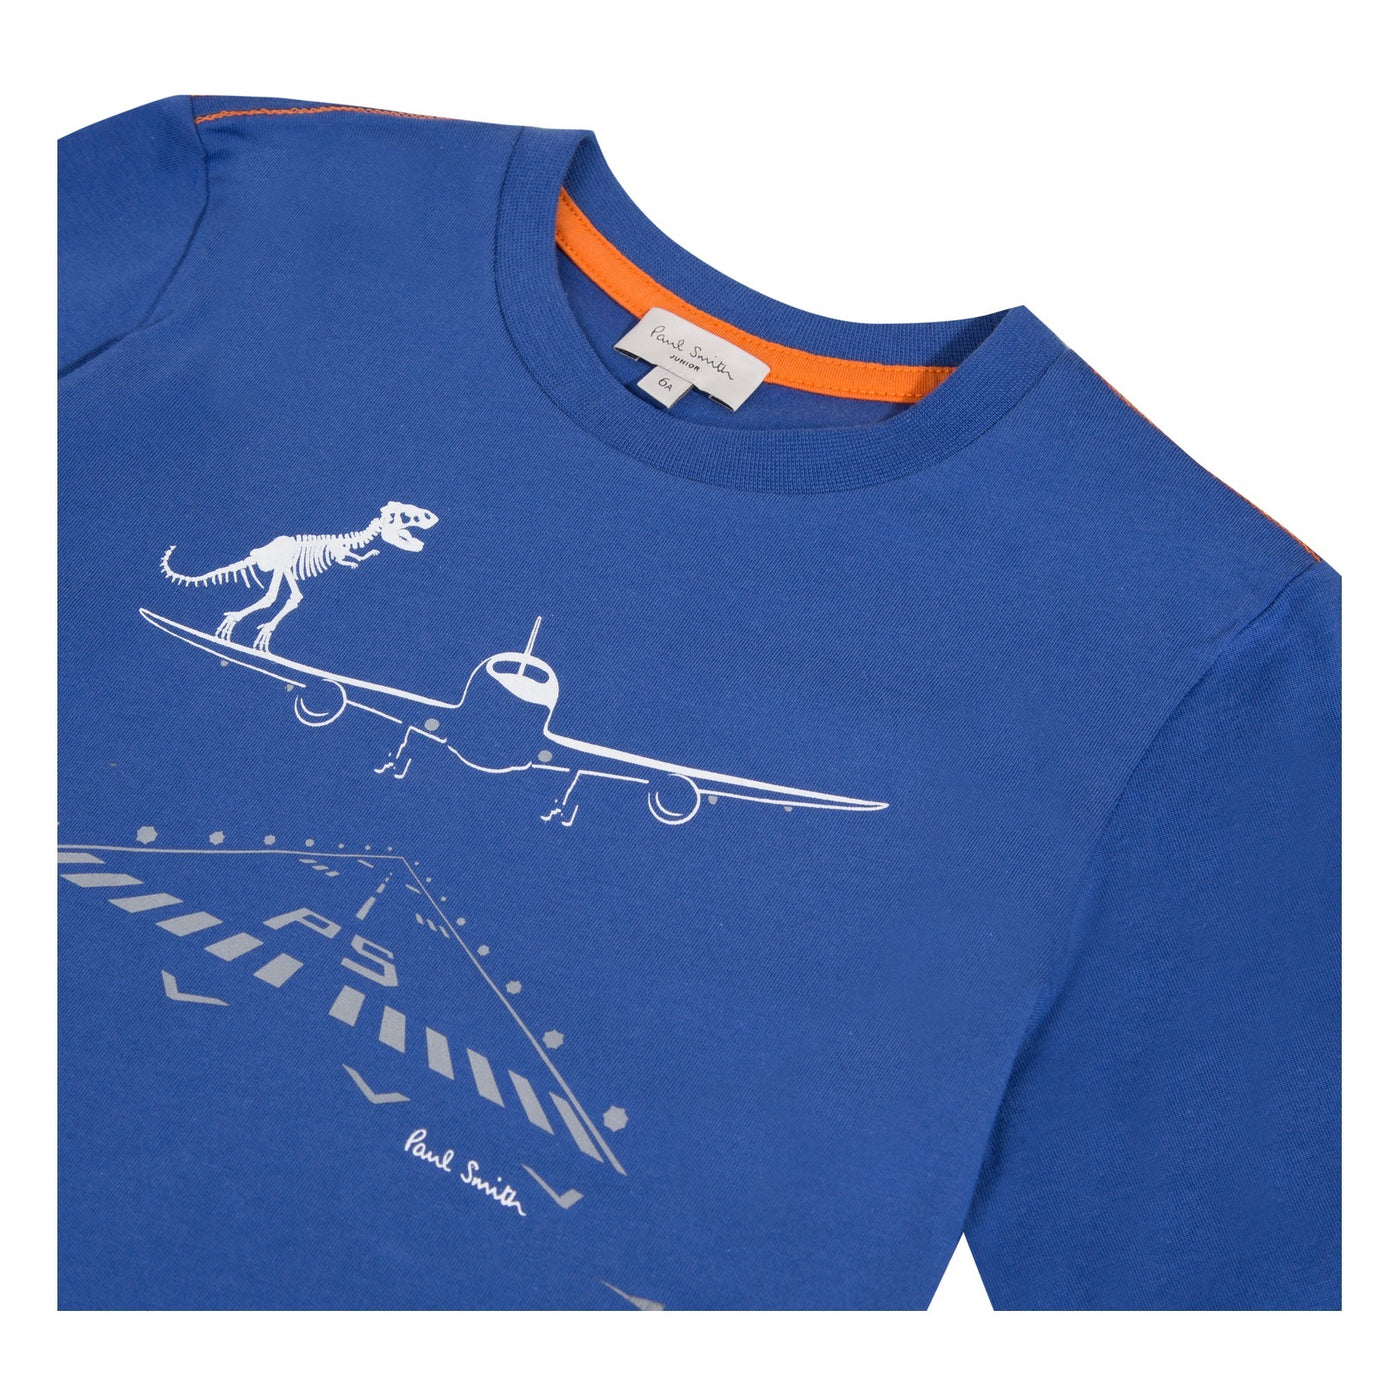 Paul Smith Kids Dino / Airplane Tee Shirt 5P10672 470